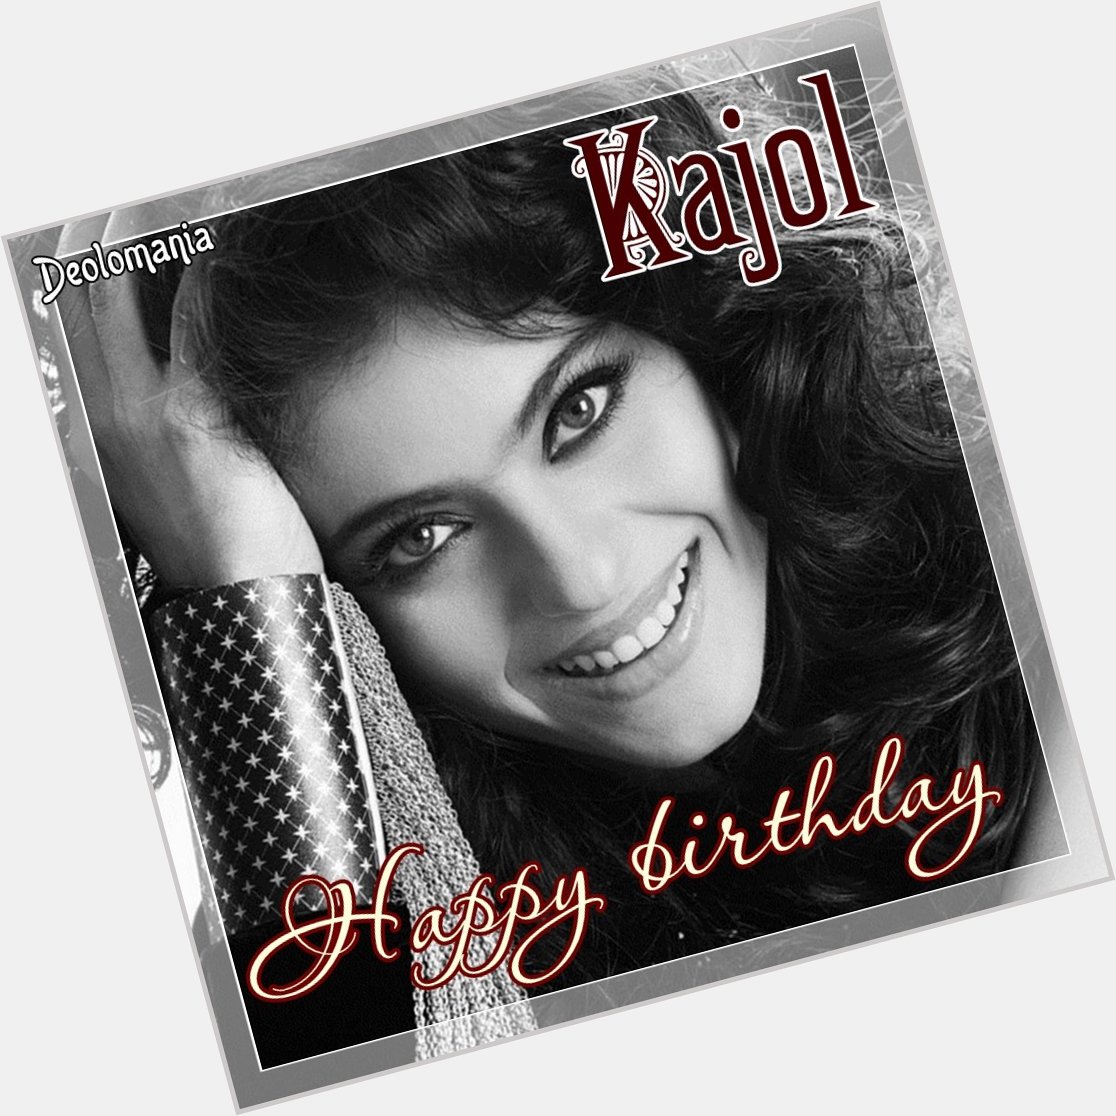 Wishing a joyful and happy birthday to wonderful Kajol!    